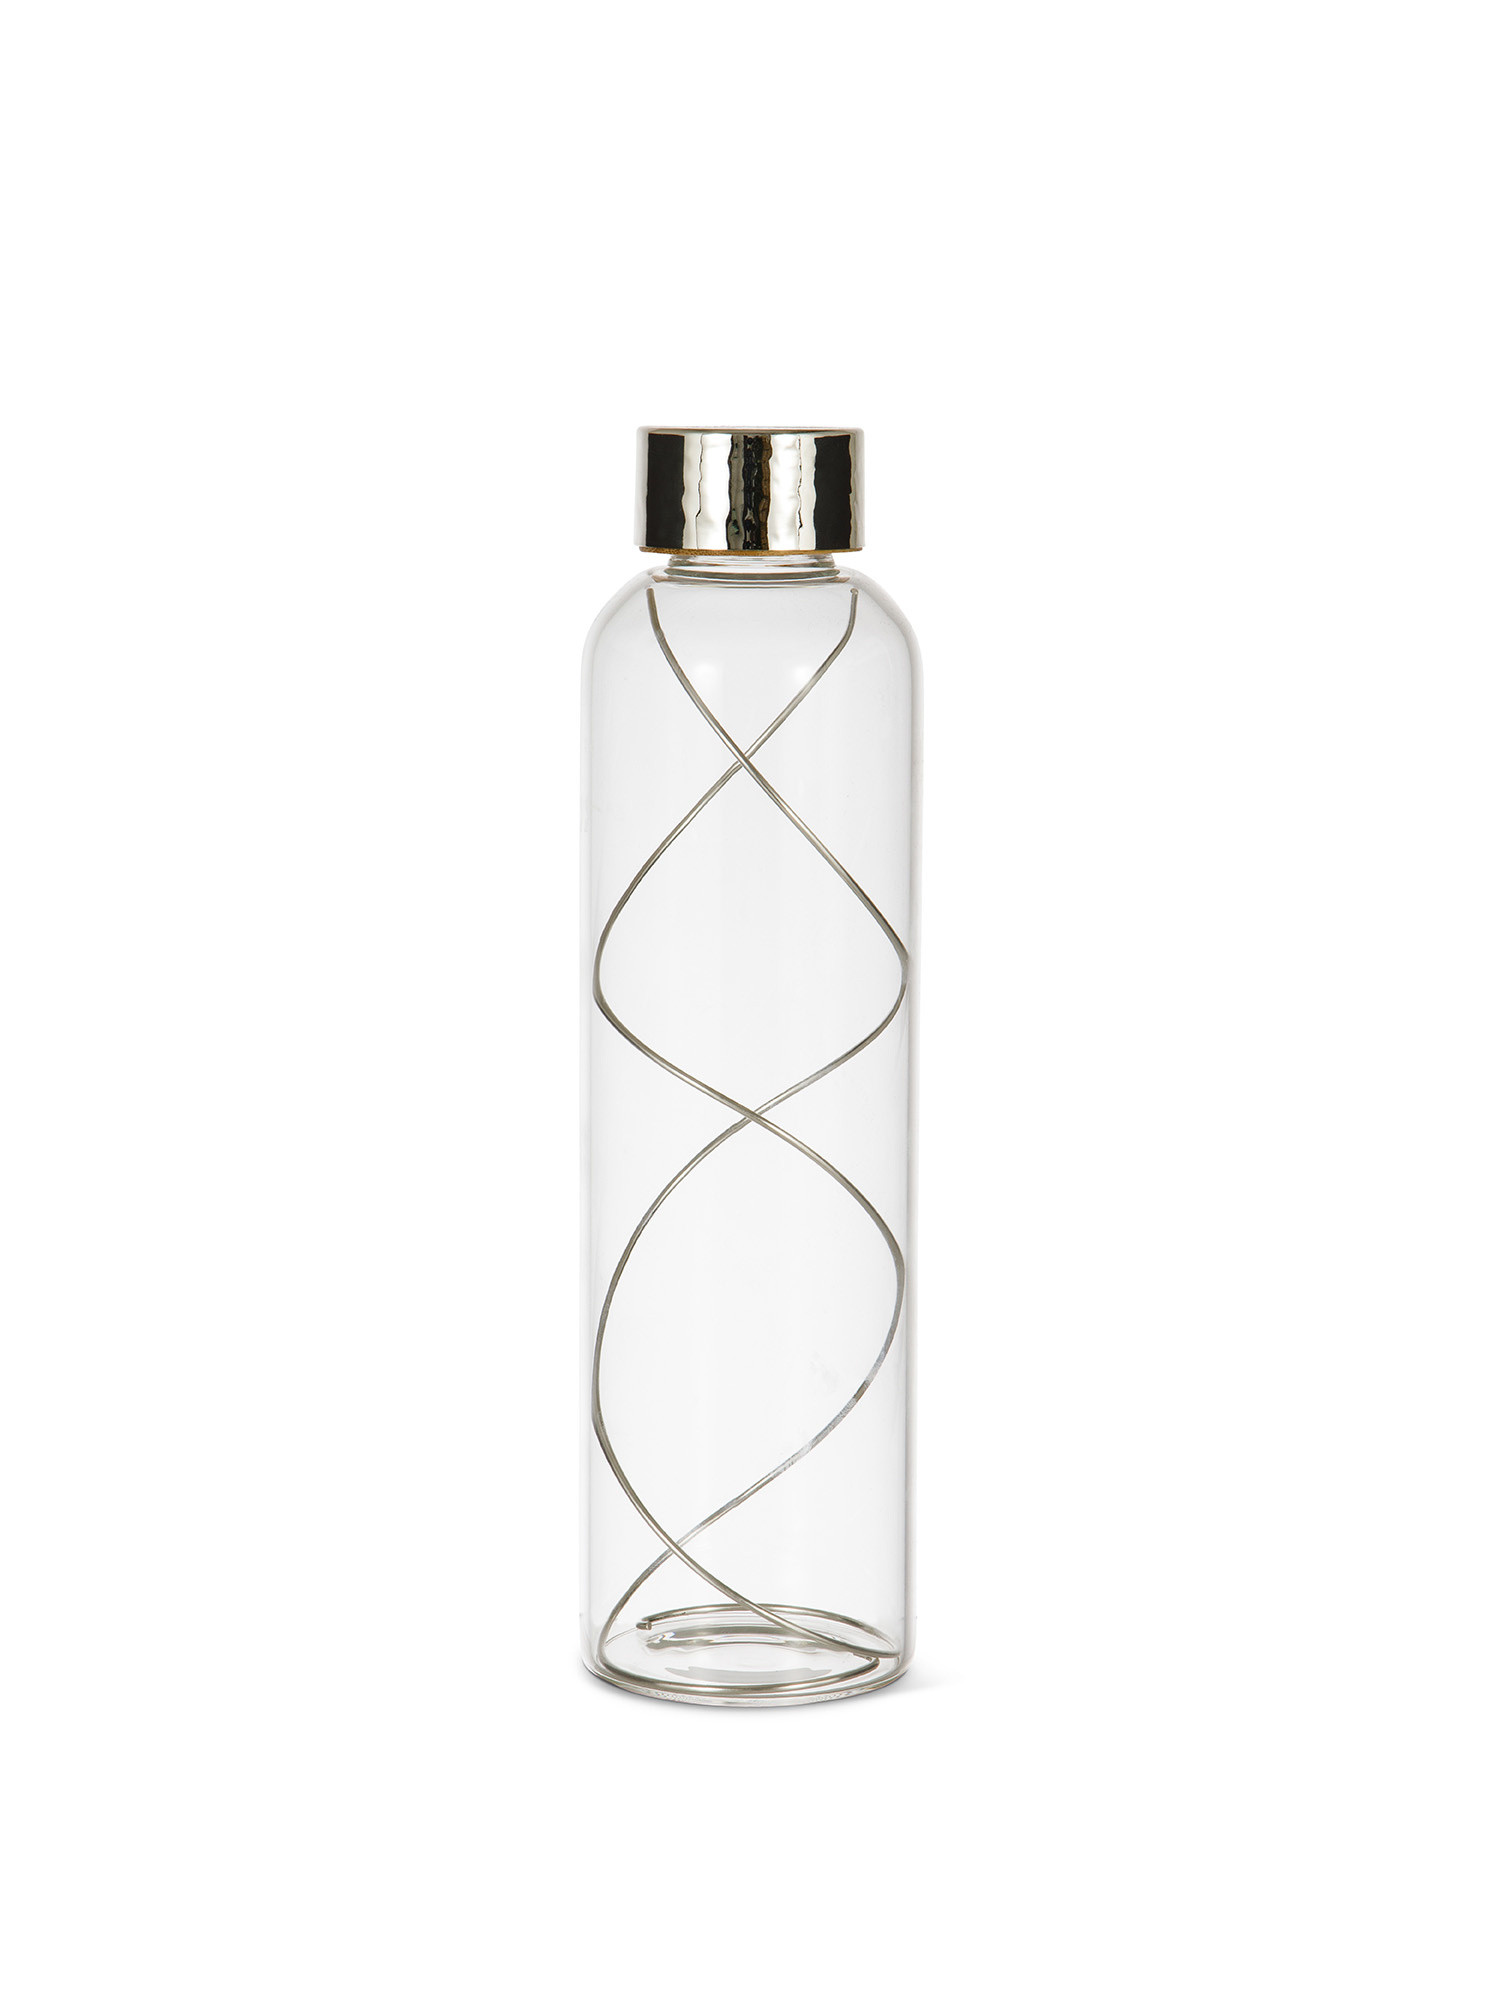 Bottiglia vetro con spirale argento 925 purificante, Grigio argento, large image number 0